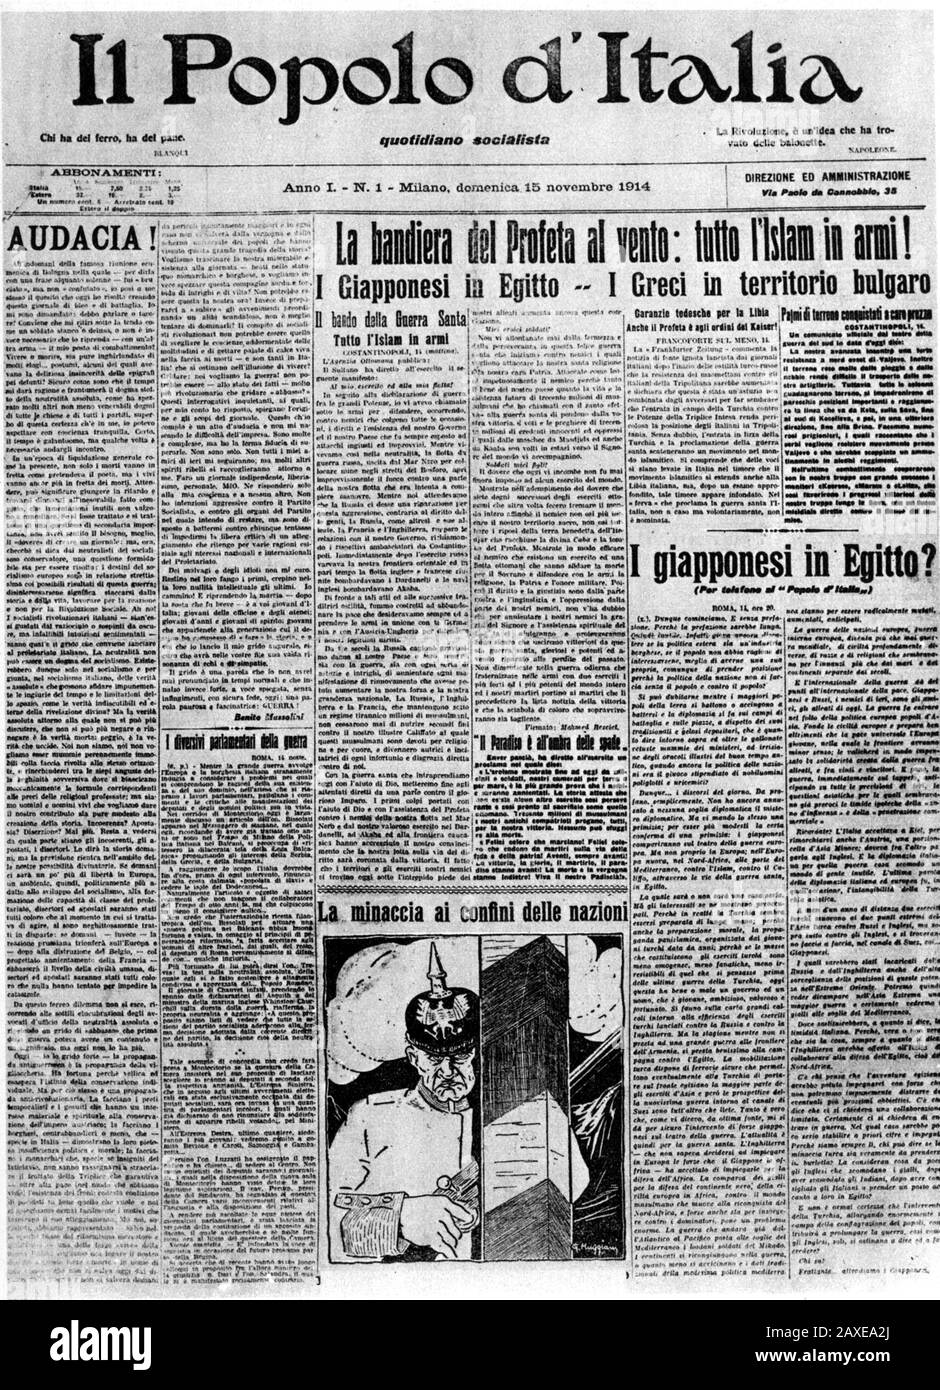 1914 , 15 november  , ITALY : The italian Fascist Duce BENITO MUSSOLINI ( Predappio, 29 july 1883 – Giulino di Mezzegra, 28 april 1945 ) was director of socialist newspaper IL POPOLO D'ITALIA . In this photo the first issue .  - ritratto - portrait  - POLITICA - POLITICO -  ITALIA - POLITIC - portrait - ITALY - FASCISMO - FASCISM - FASCISTA - ITALIA   - giornale - primo numero - cover - copertina - QUOTIDIANO ---  Archivio GBB Stock Photo